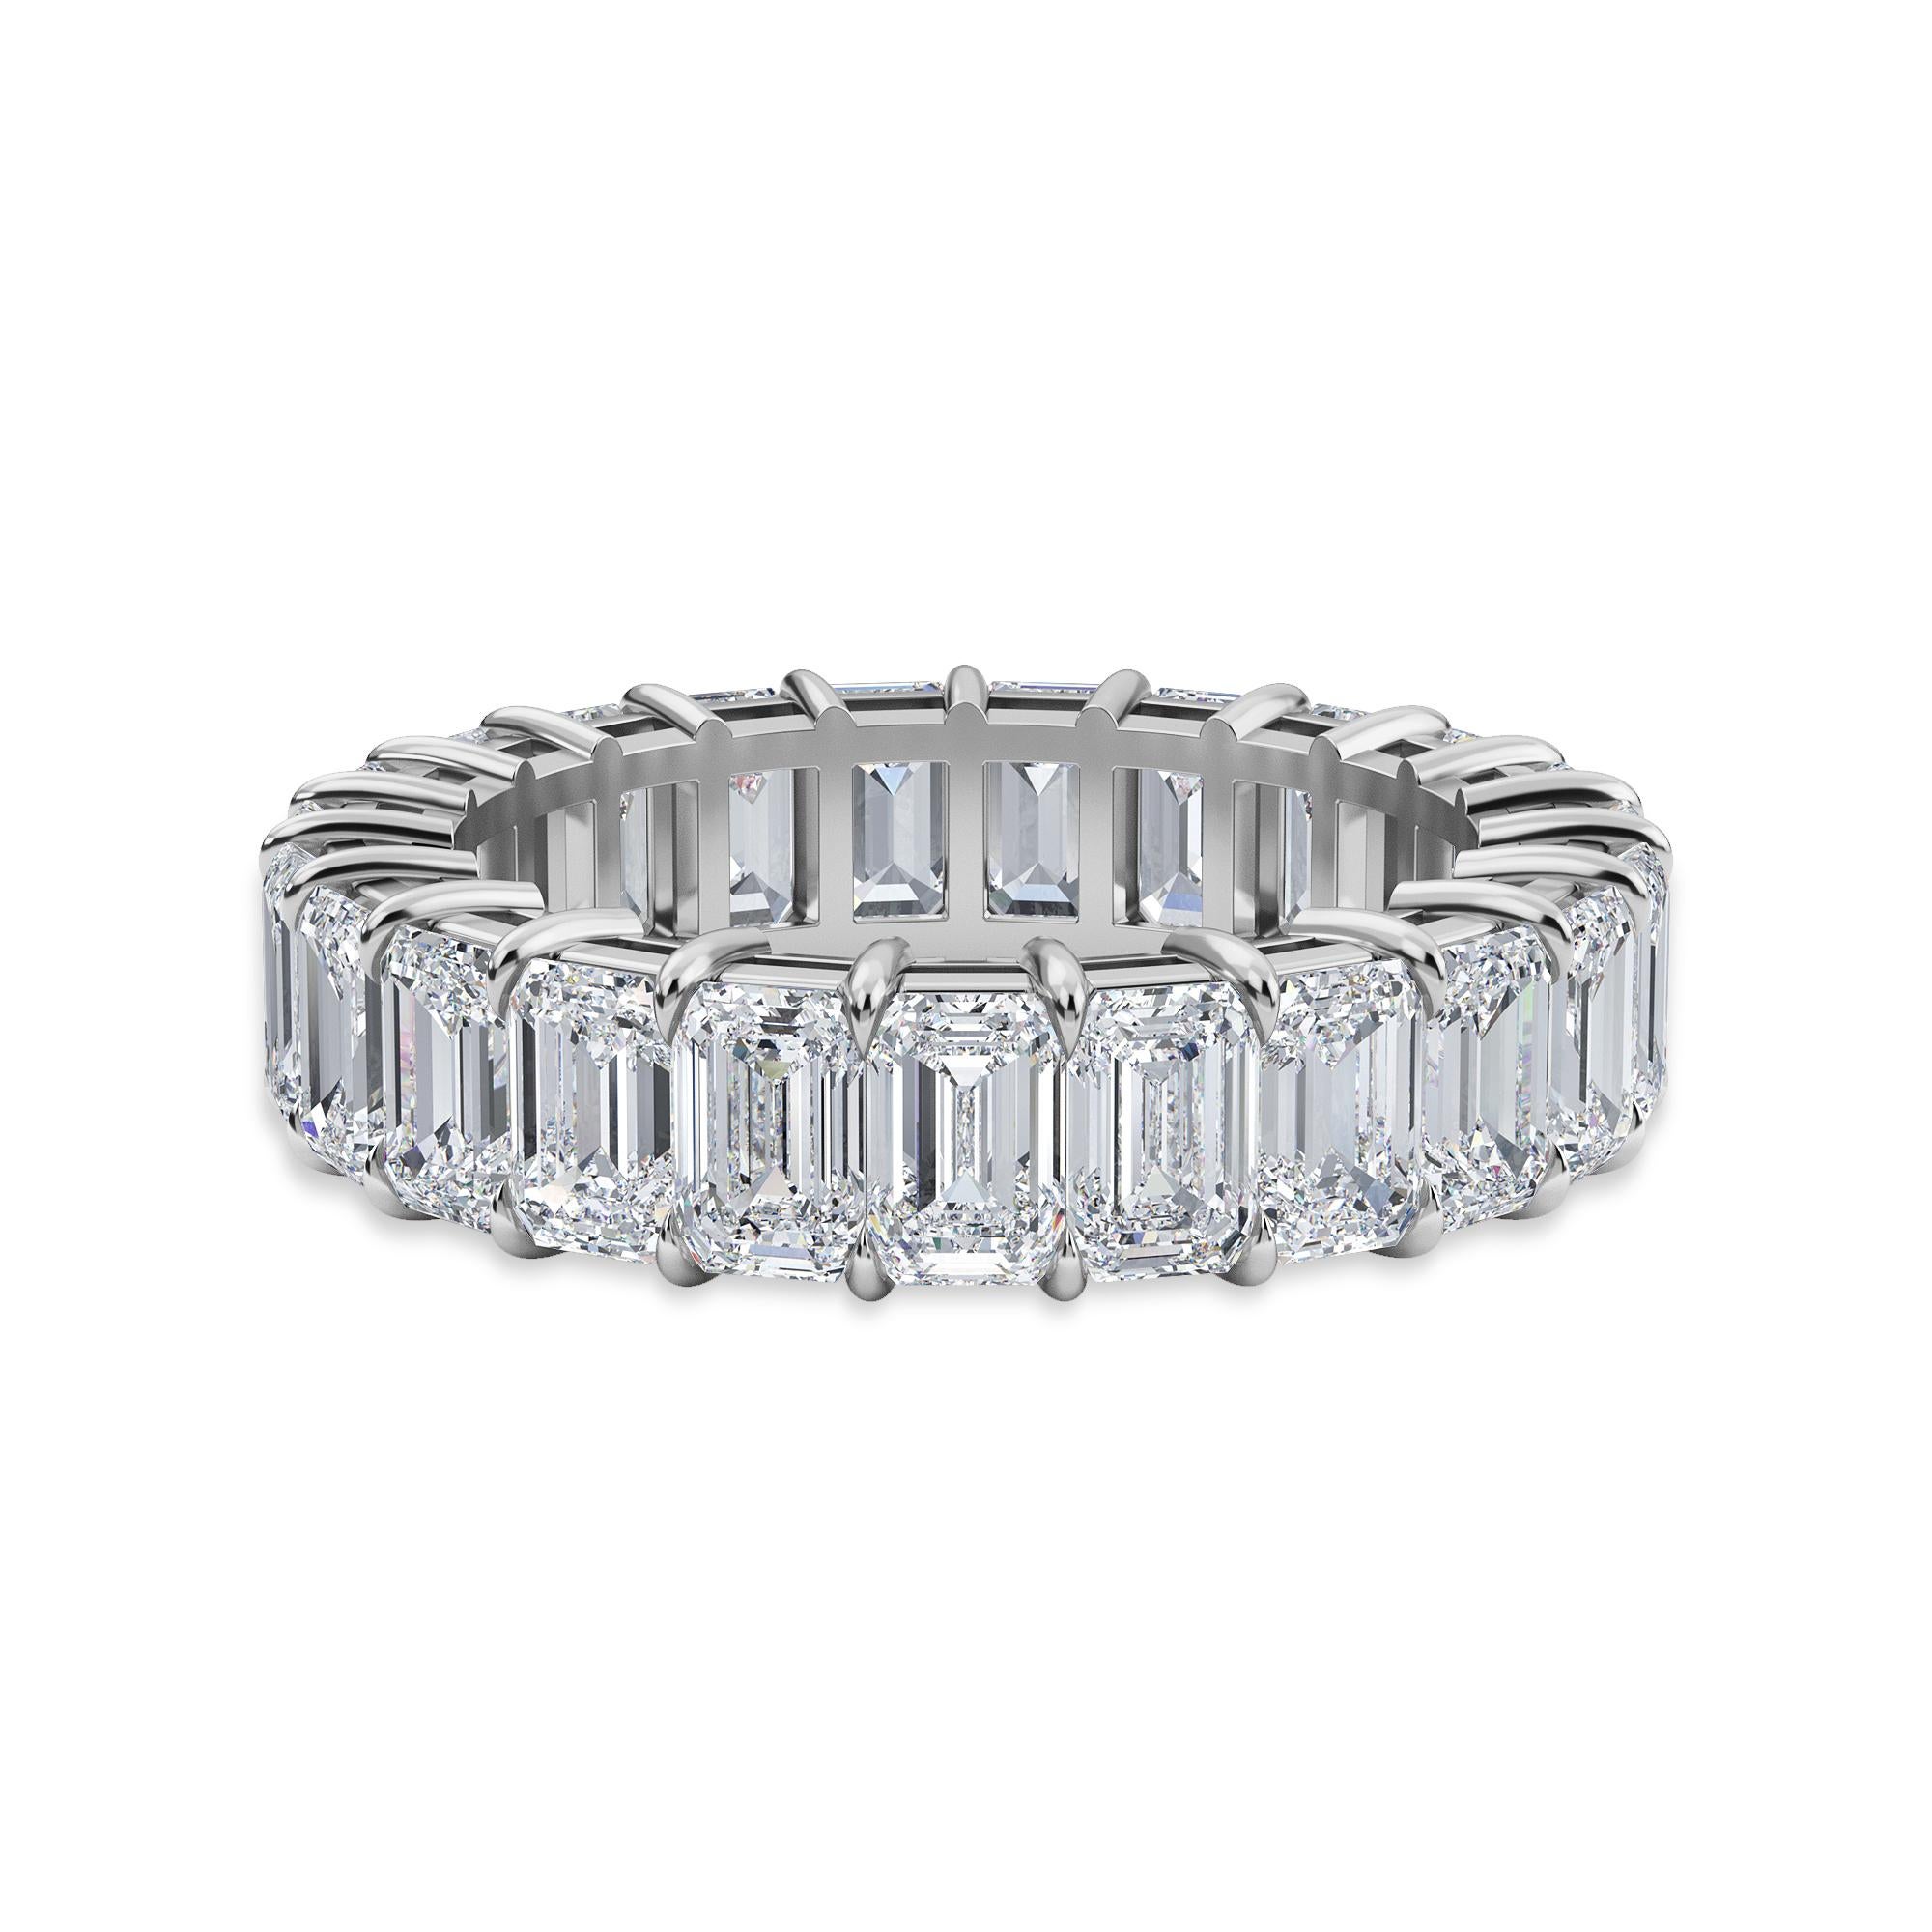 Dieser Smaragdschliff-Diamant Eternity Band verfügt über 23 Diamanten und hat ein Gesamtkaratgewicht von 5,67.
Die Diamanten sind F Farbe, VS Klarheit. Der Ring ist eine Fingergröße 7 und ist in Platin gefasst.